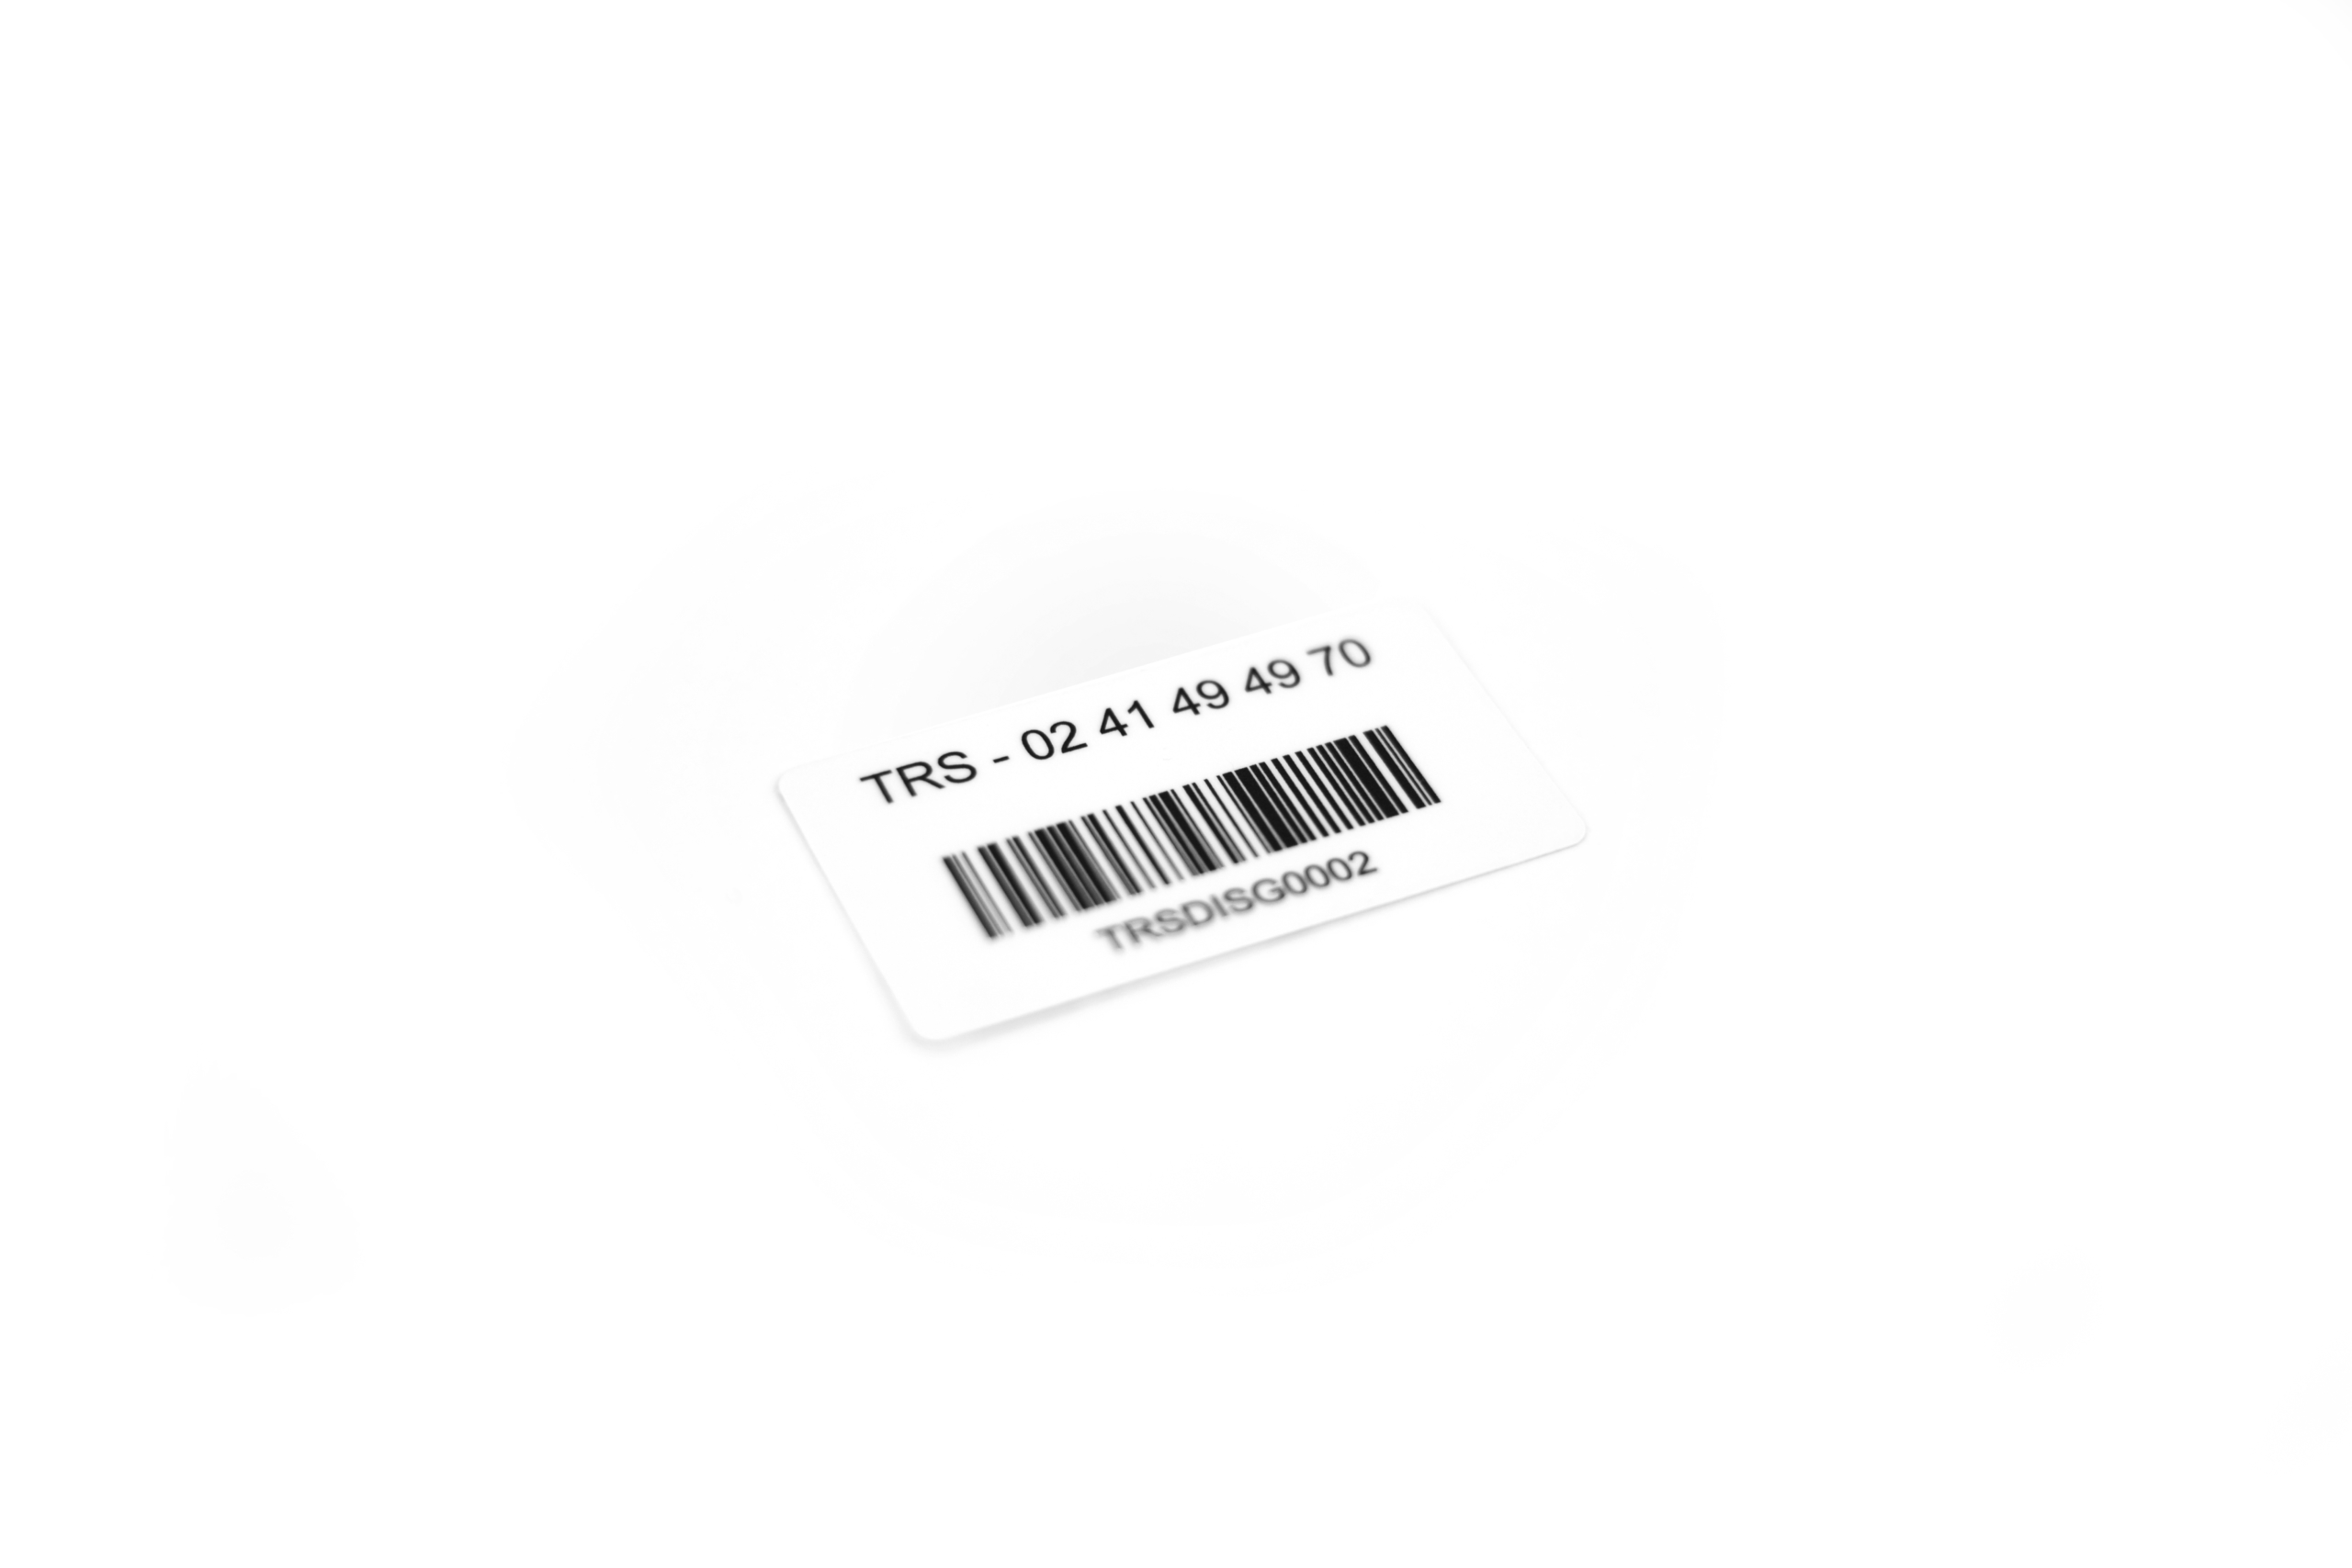 Étiquette inventaire - Étiquetage inventaire - News Étiquettes